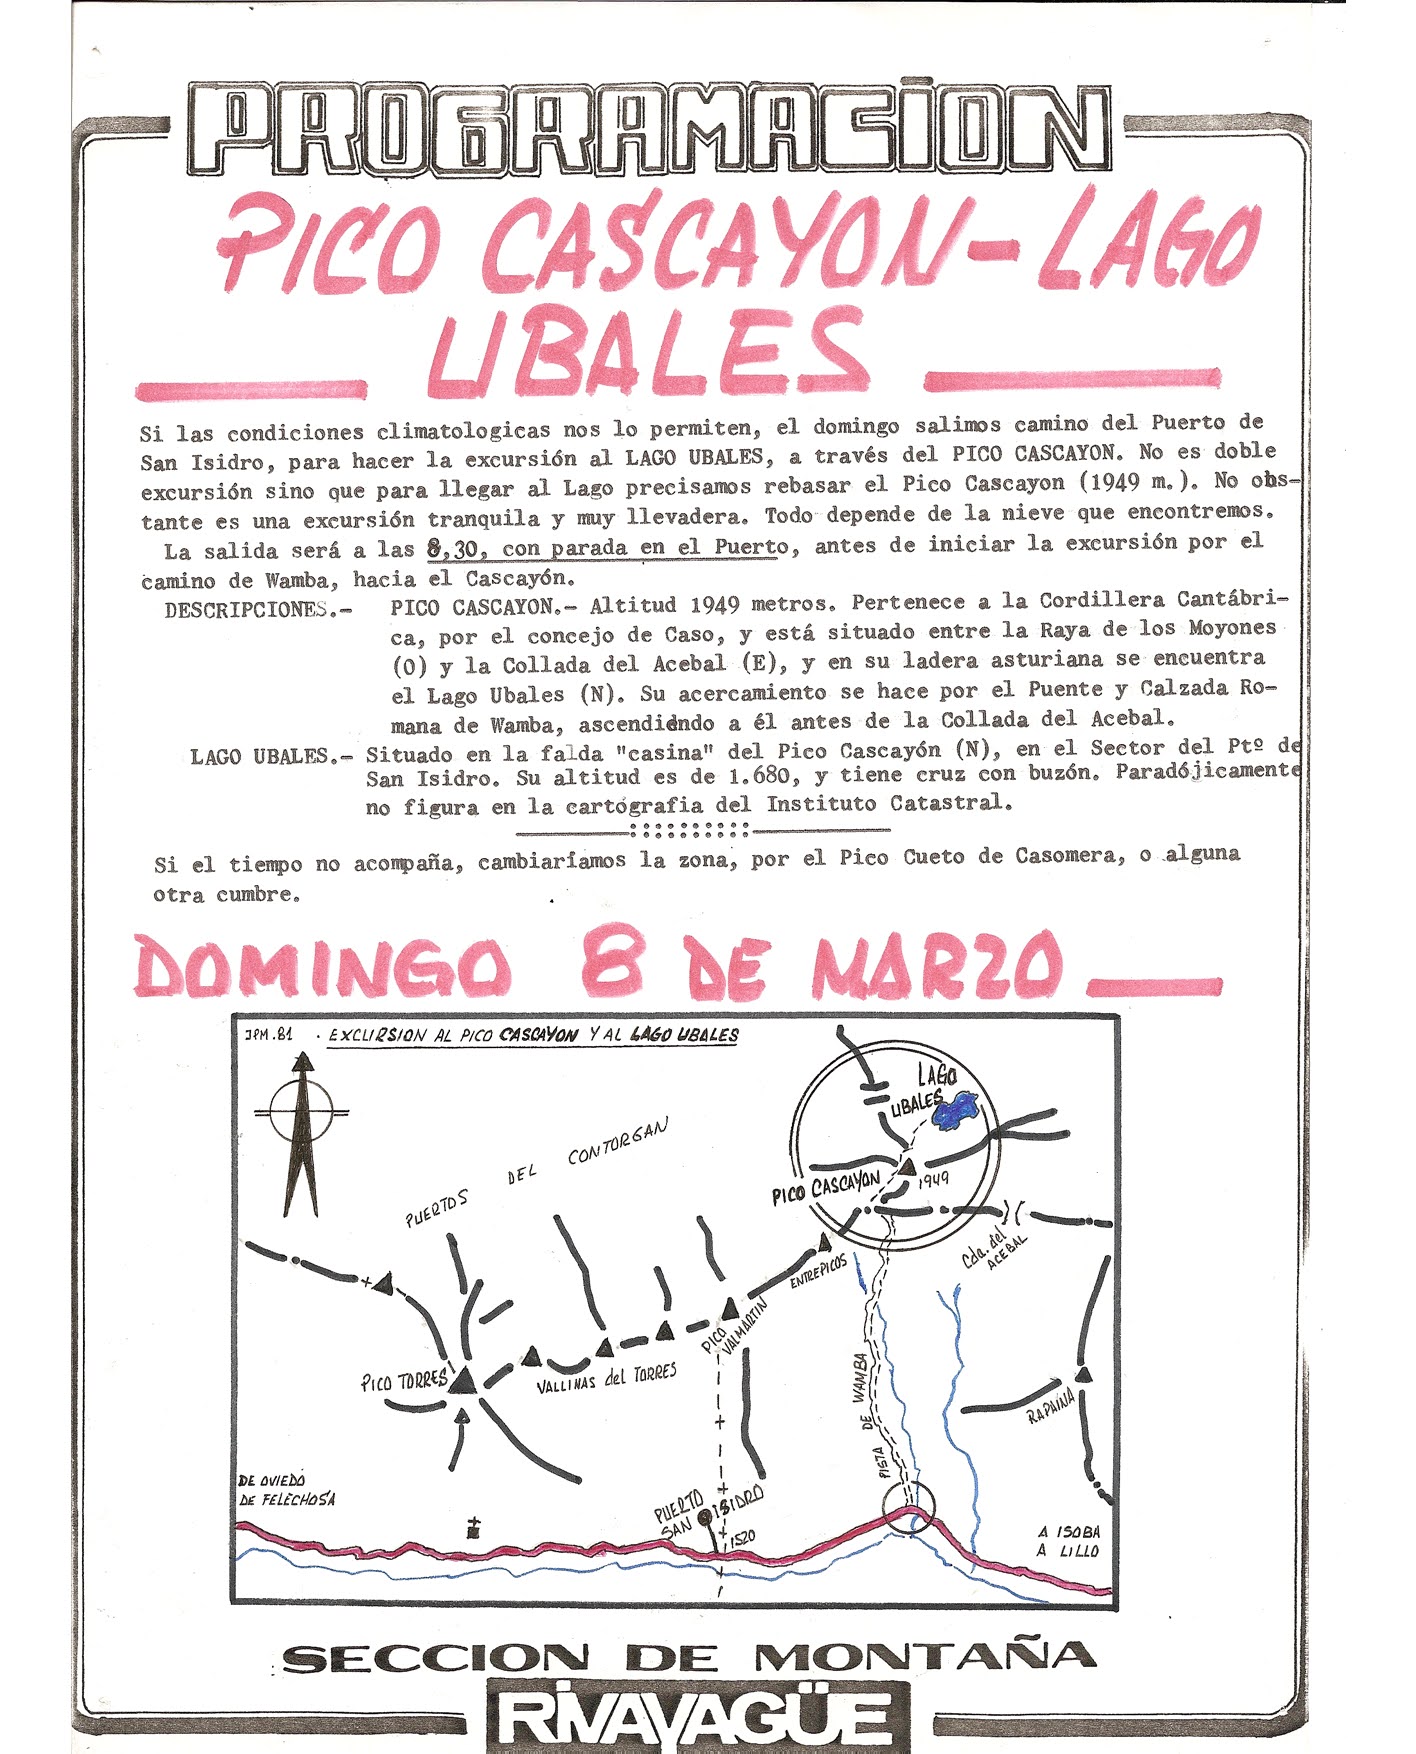 8 marzo, 1981: Pico Cascayón - Lago Ubales